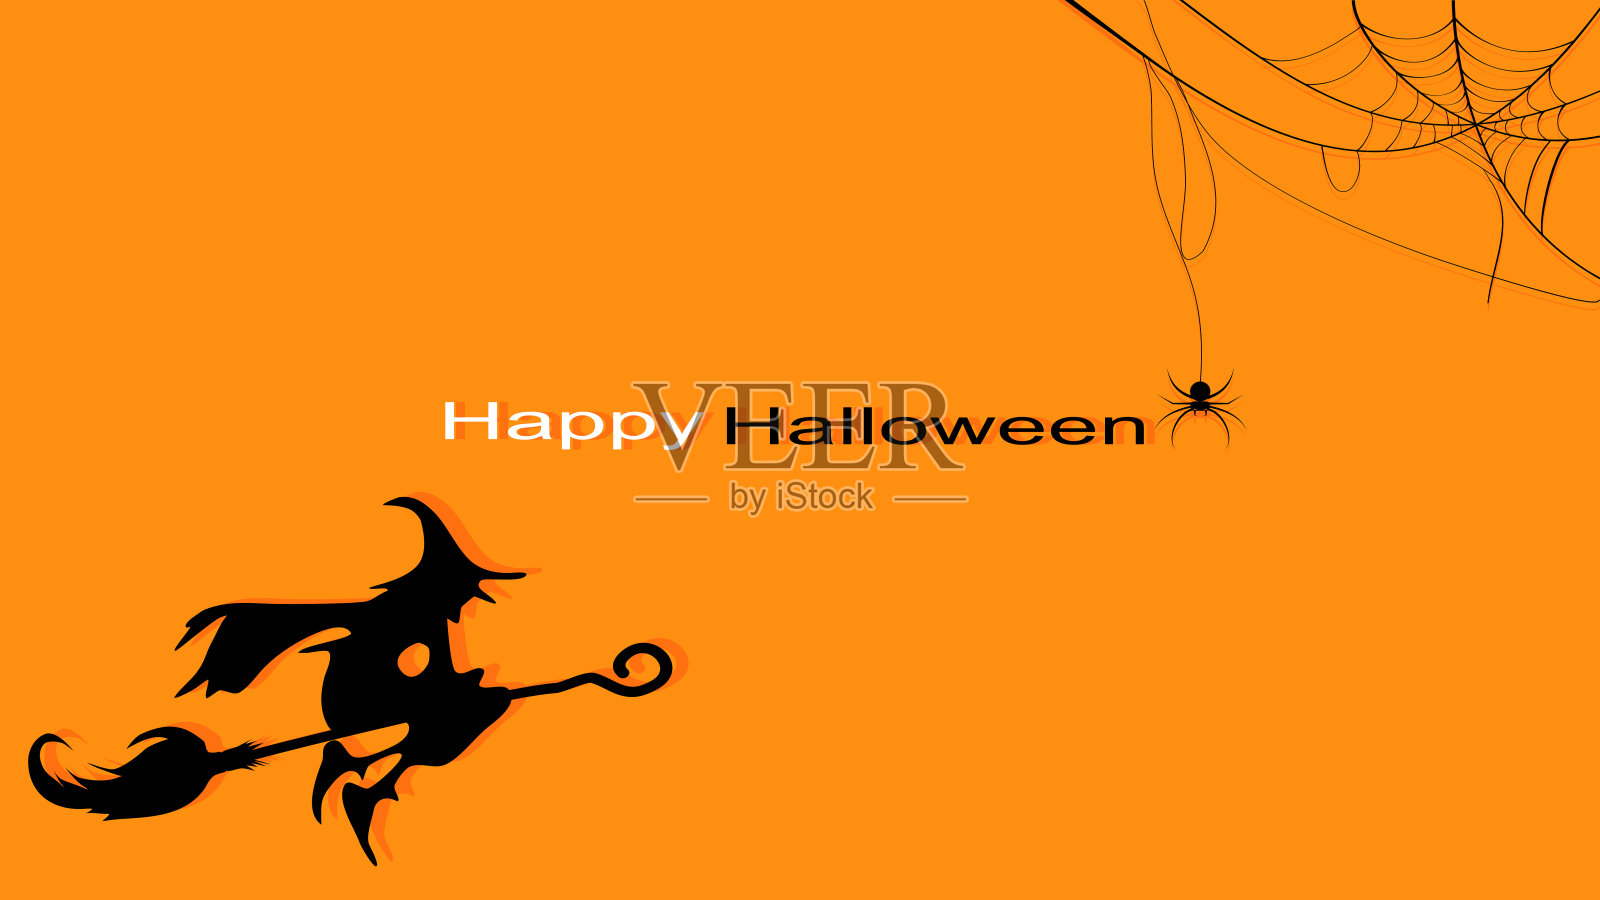 万圣节快乐。蜘蛛和女巫。橙色背景平面设计矢量插画图片素材